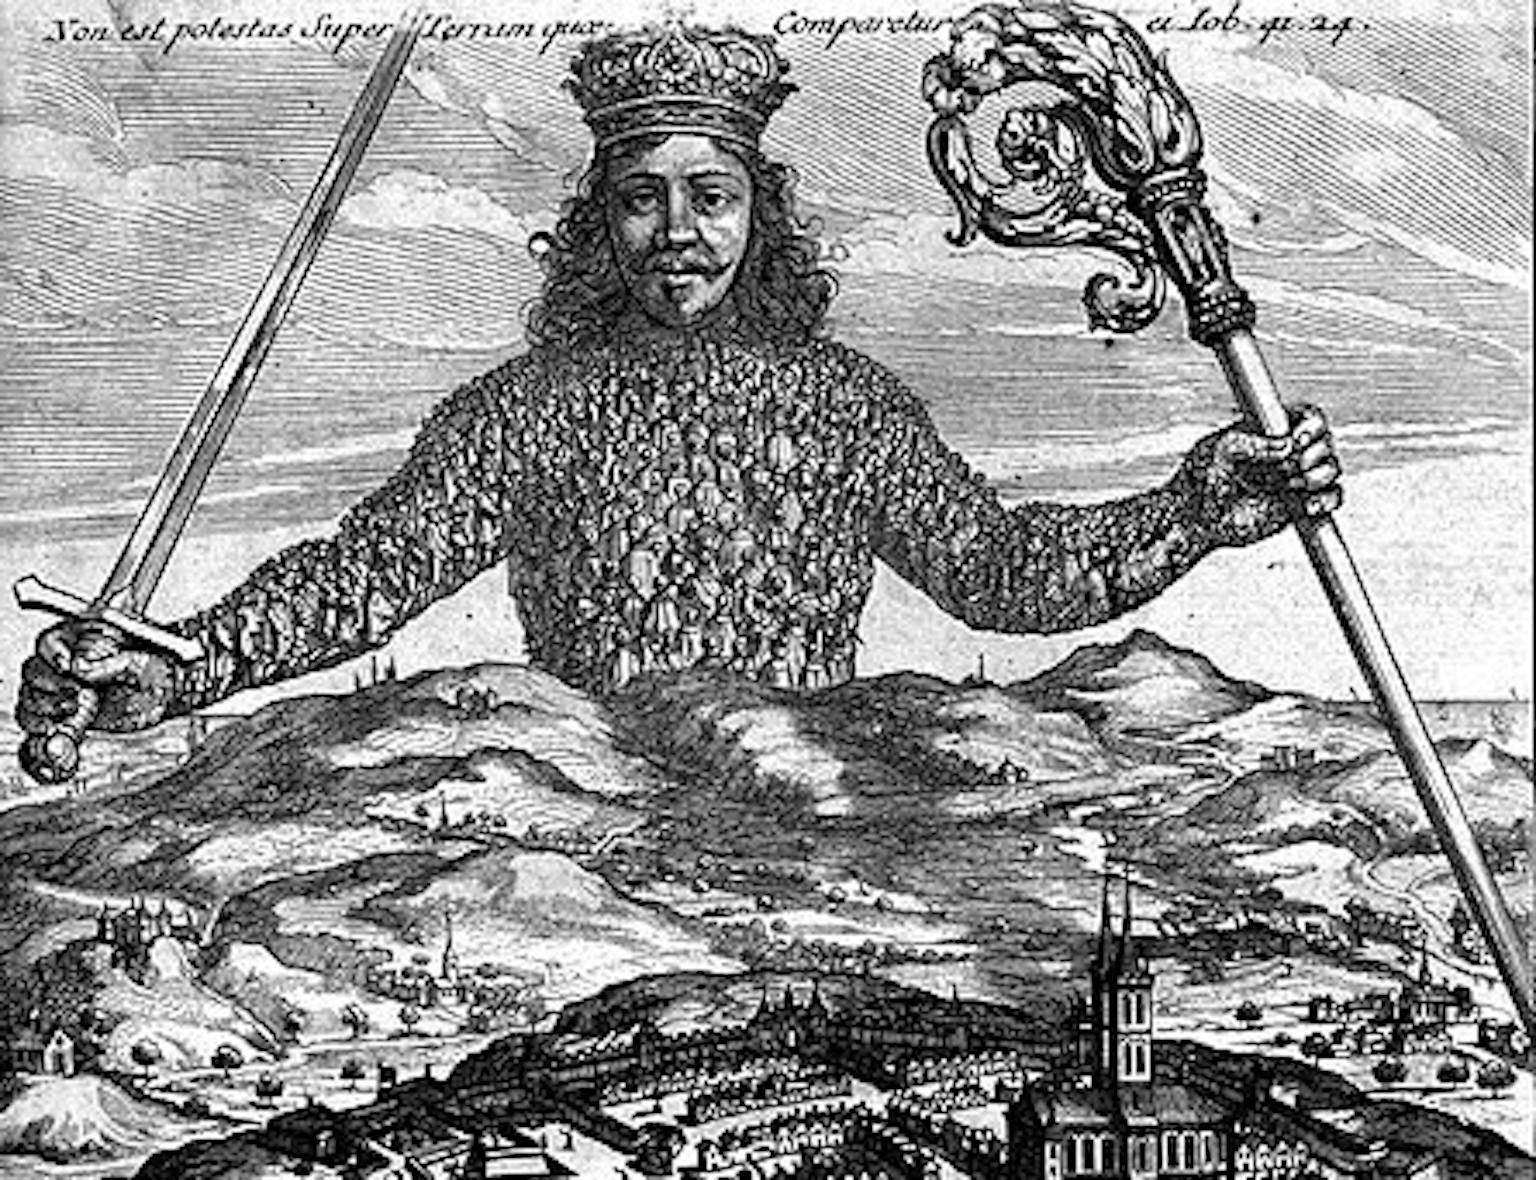 Uitsnede omslag boek Leviathan door Thomas Hobbes